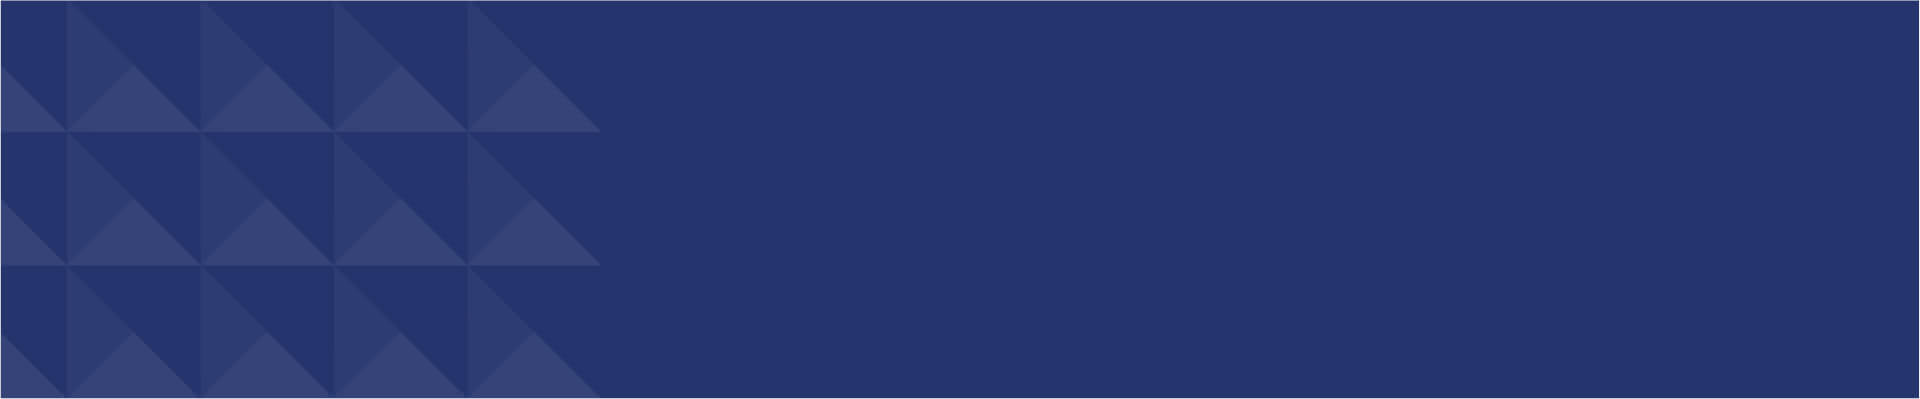 Blue patterned banner